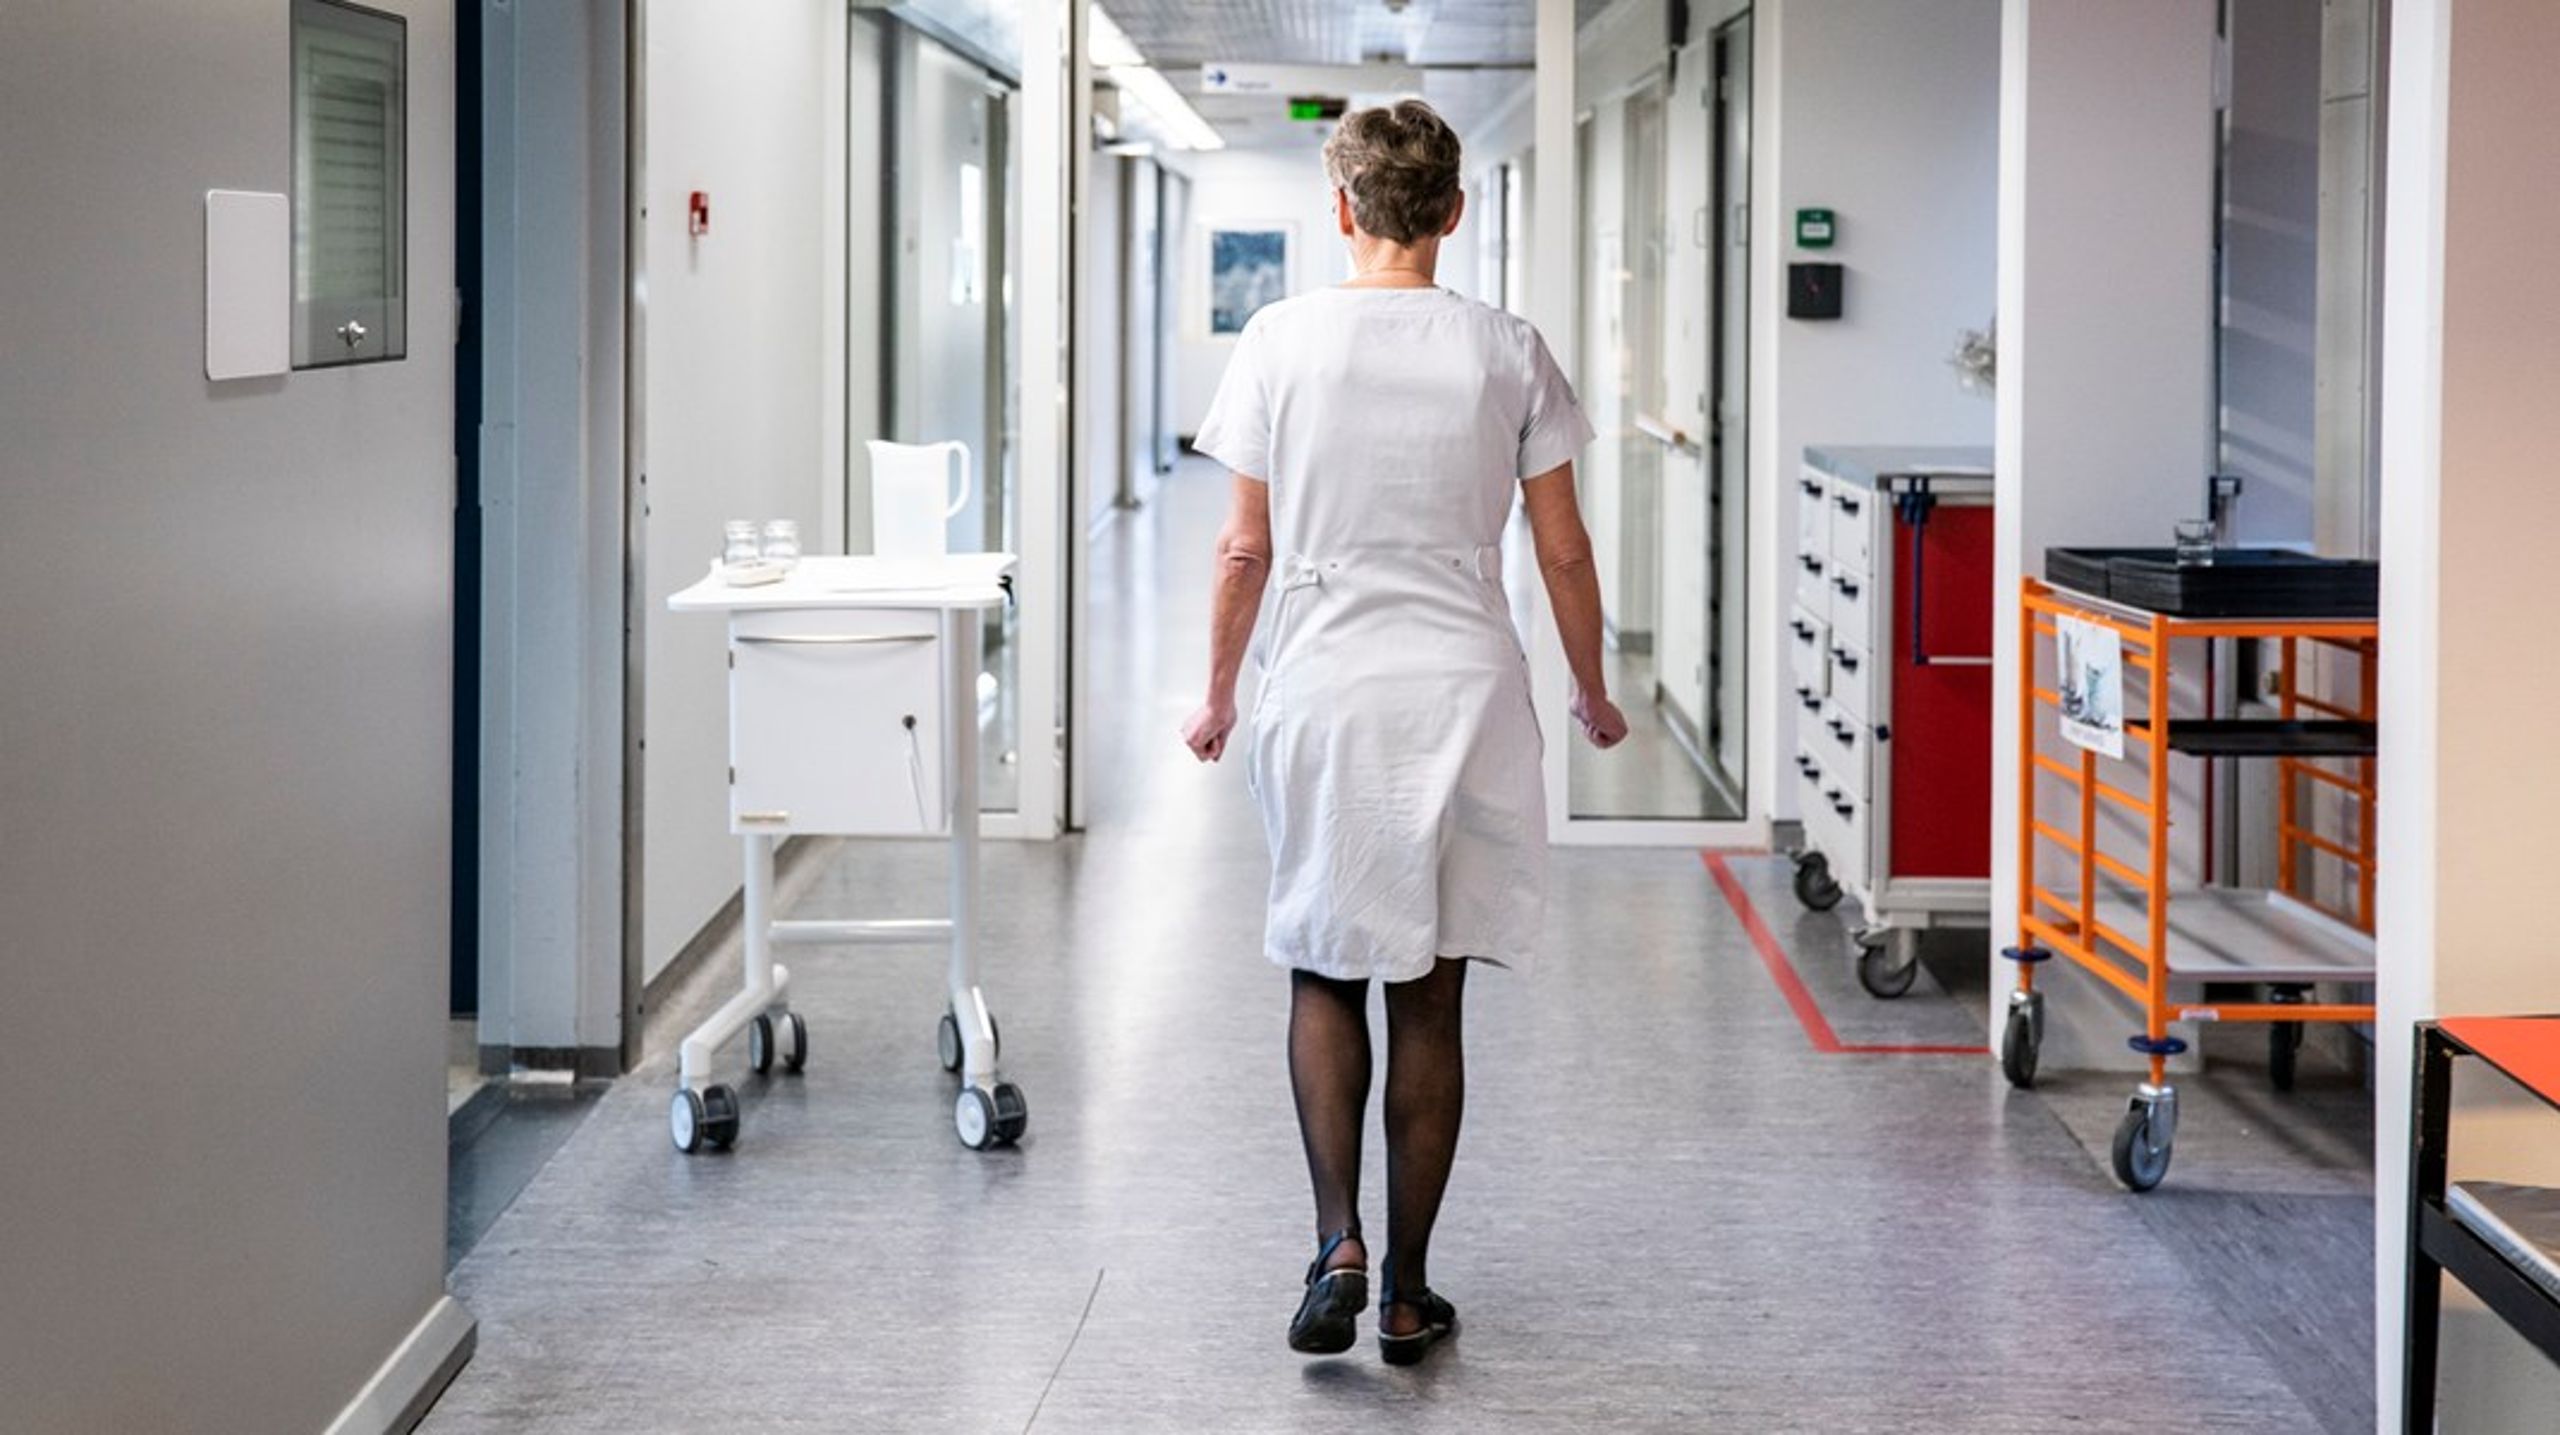 Problemet er ikke senge og udstyr, men manglen på sygeplejersker med
speciale i intensiv pleje, skriver&nbsp;Dorthe Boe Danbjørg og Pernille Madsen.<br>